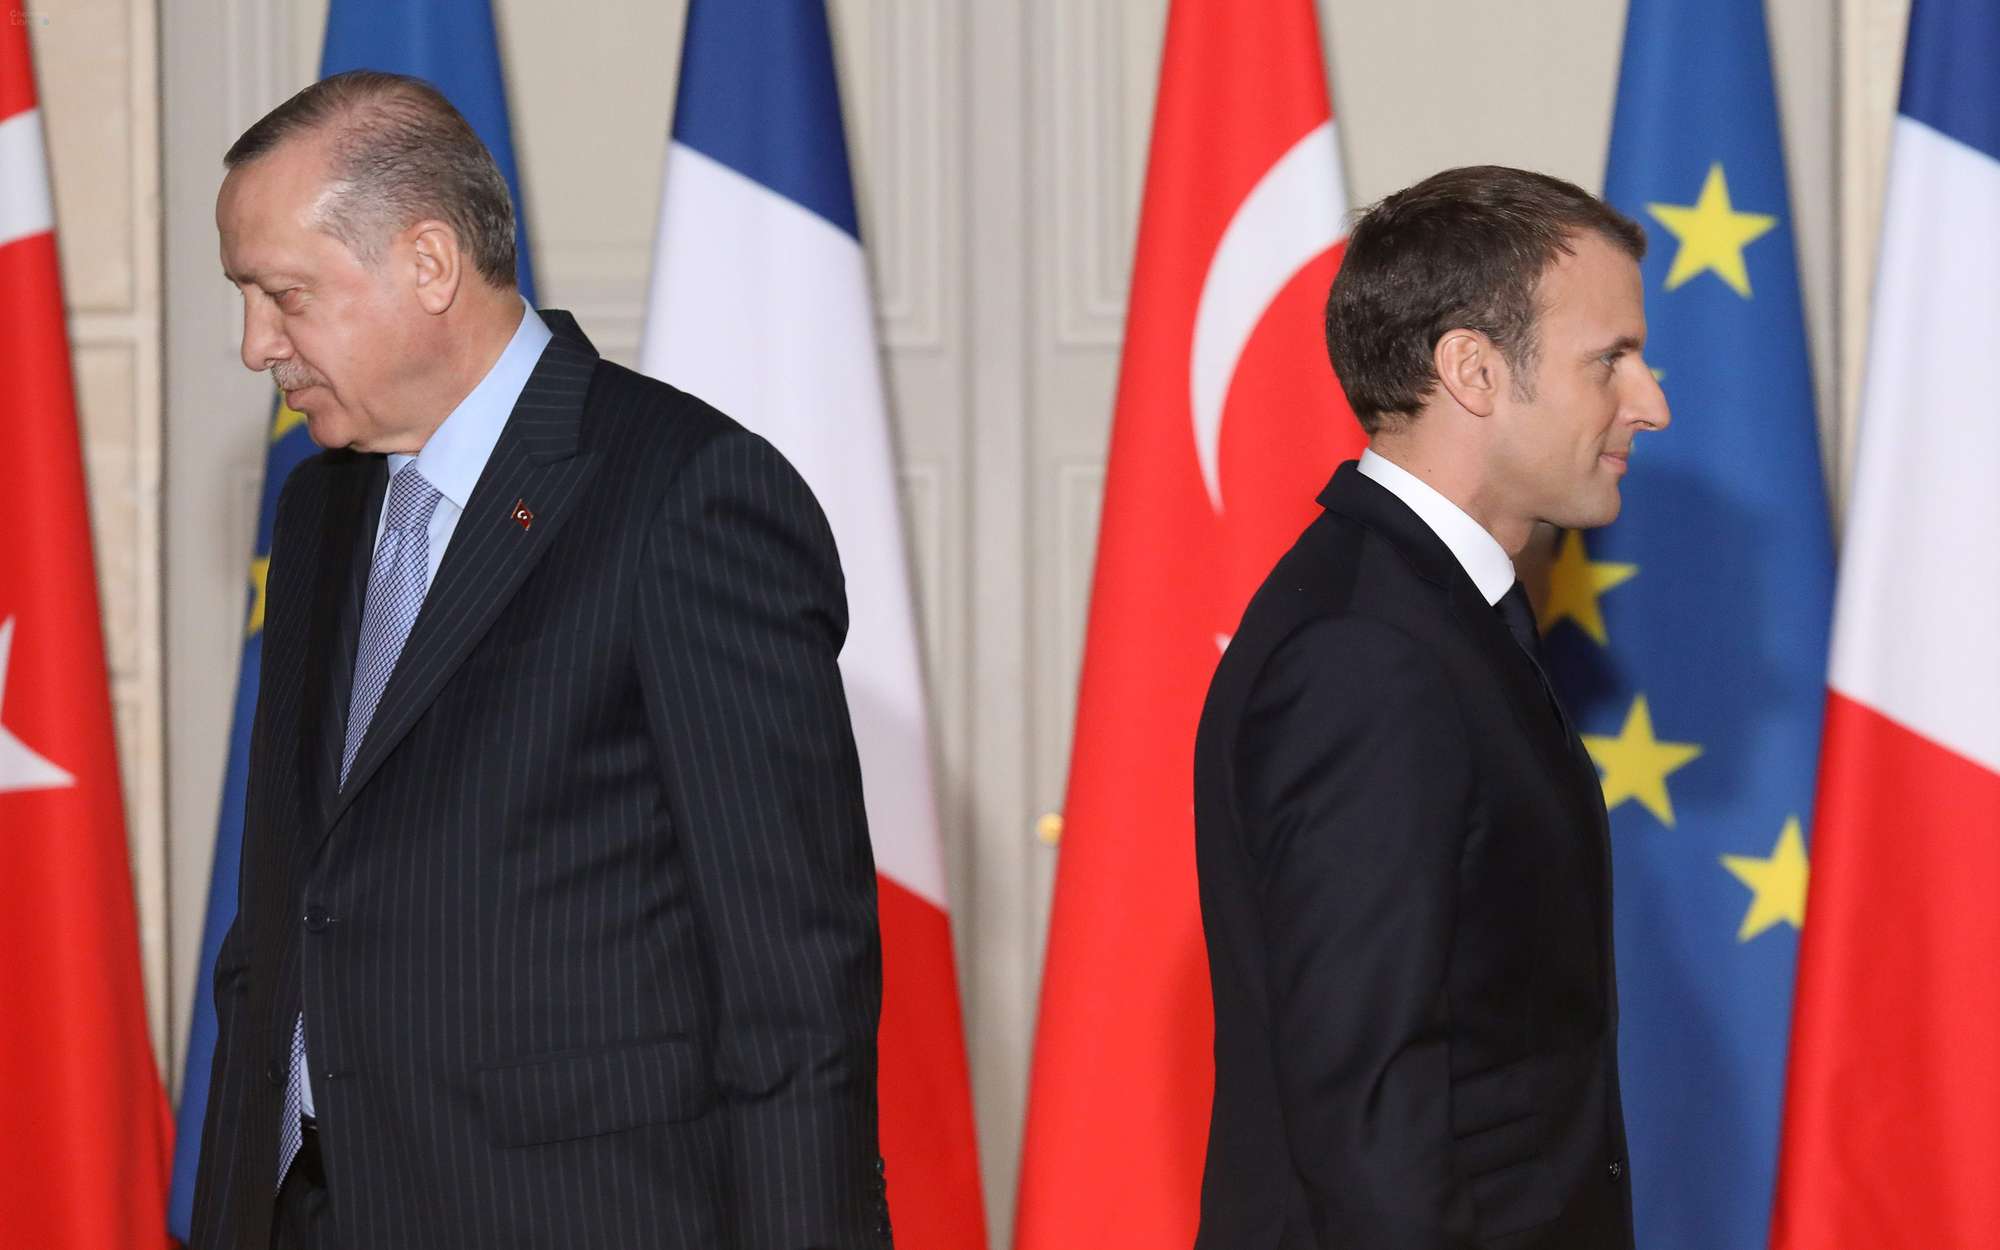 تركيا ـ هل شجع خطاب أردوغان على القيام بهجمات نيس؟